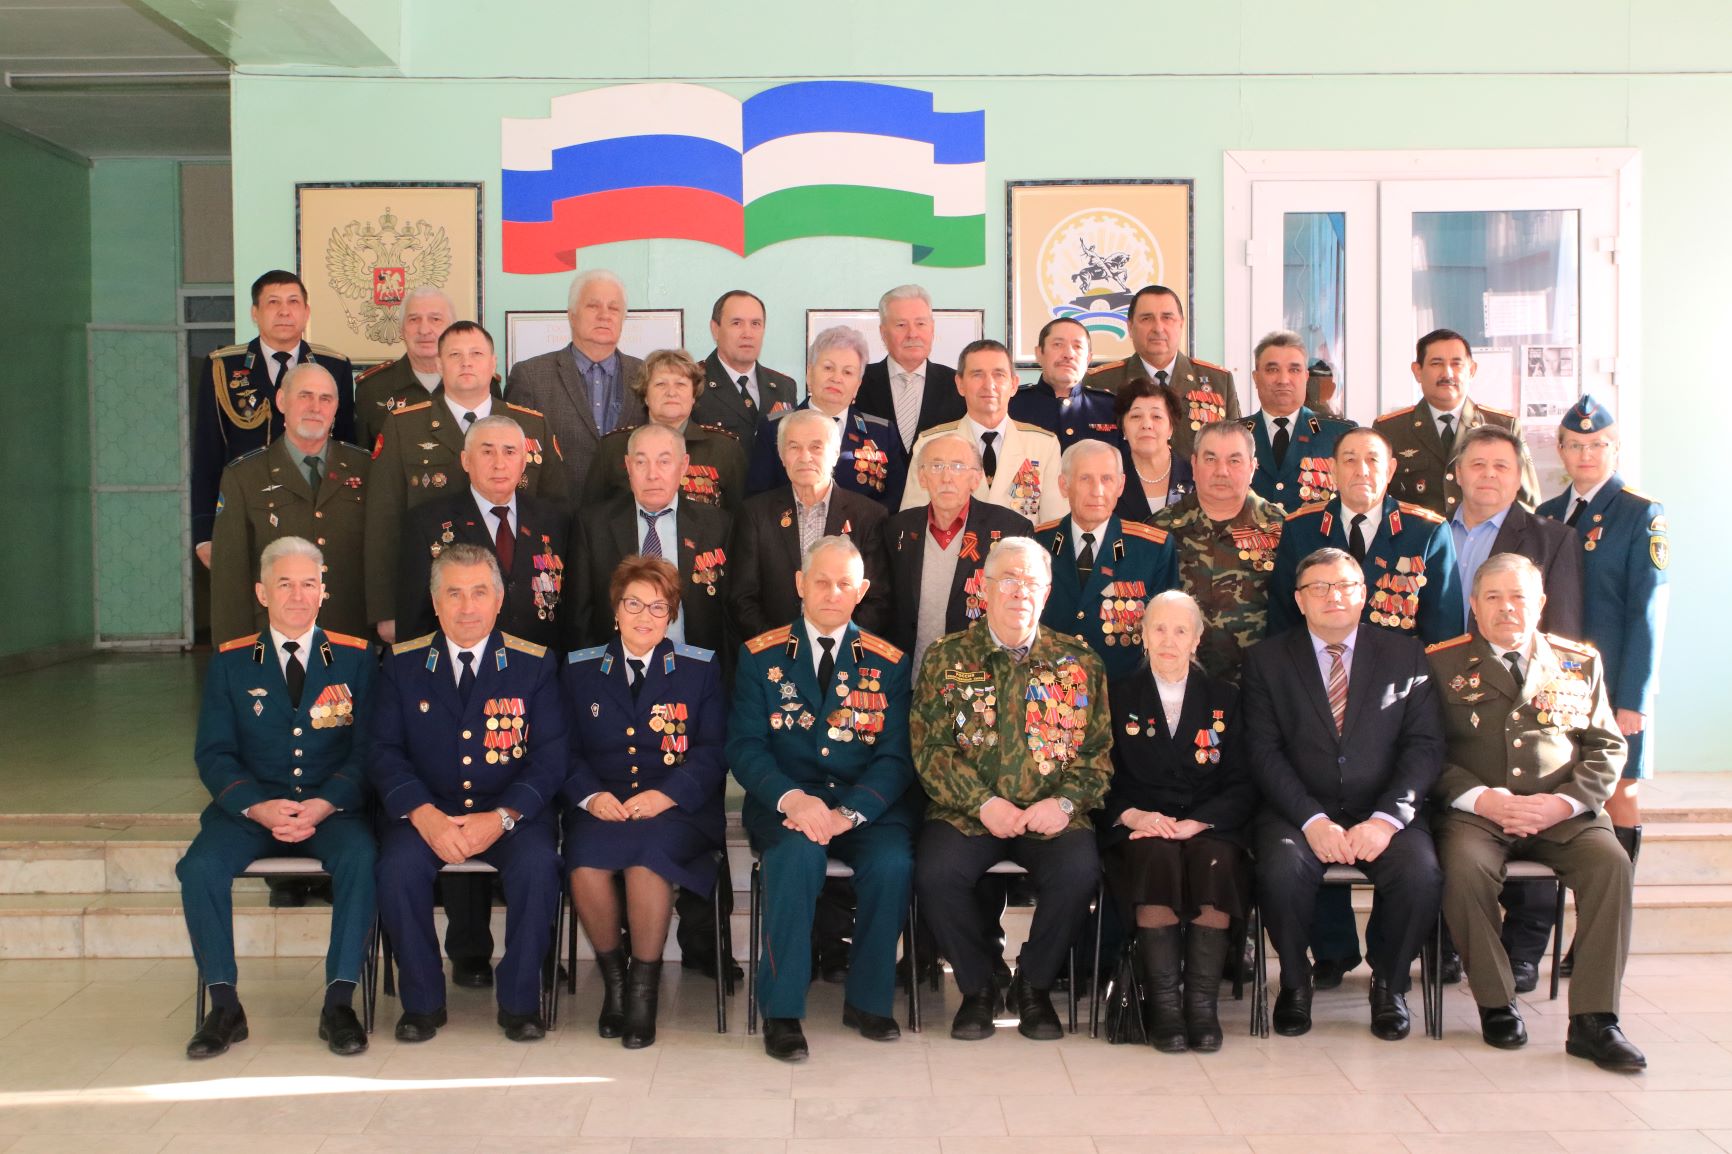 Ветеранские организации россии